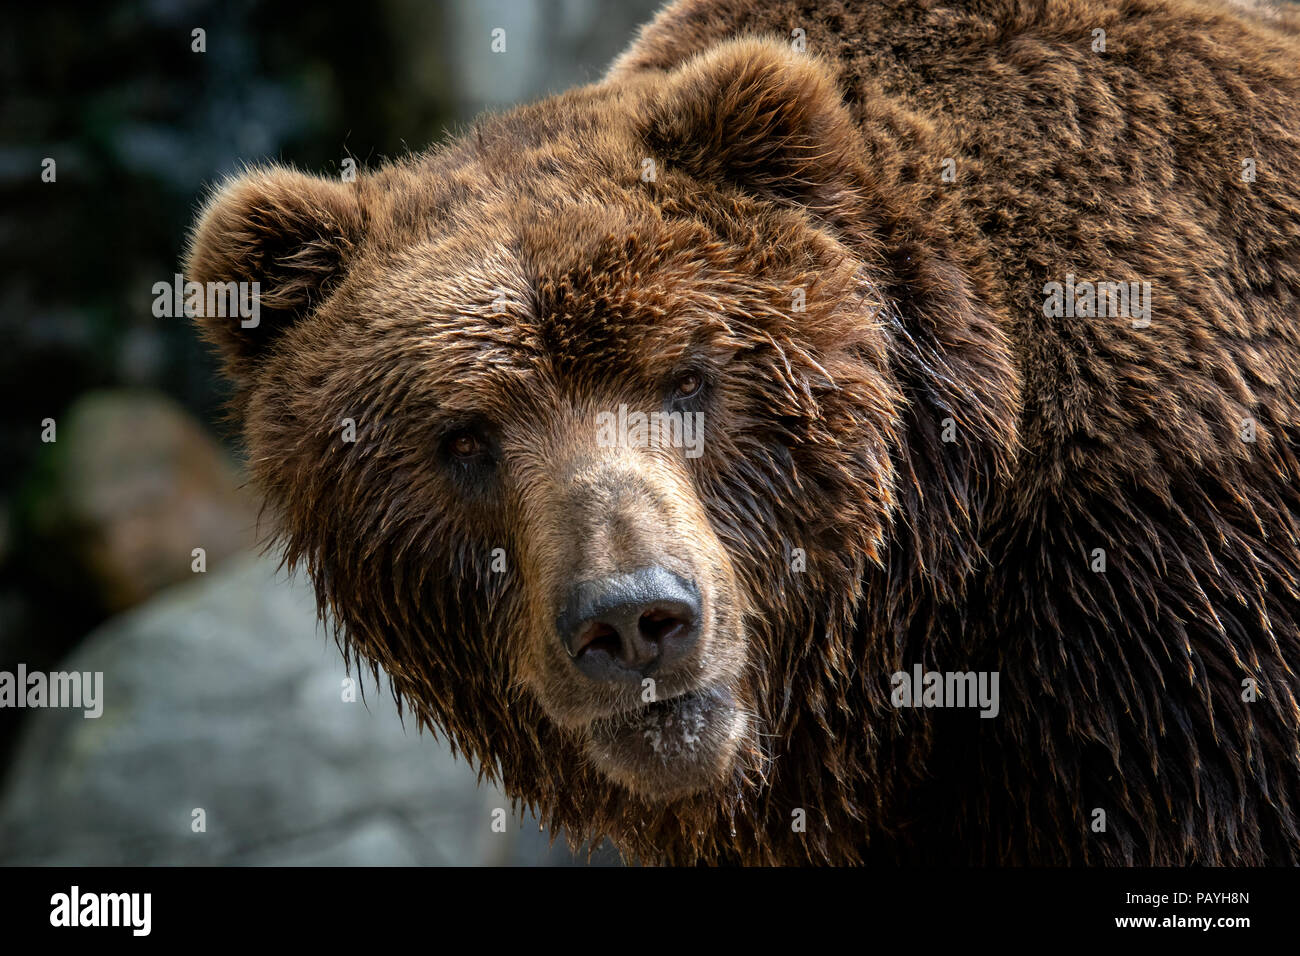 Kamchatka Brown bear (Ursus arctos beringianus). Brown fur coat, danger and aggresive animal. Big mammal from Russia. Stock Photo